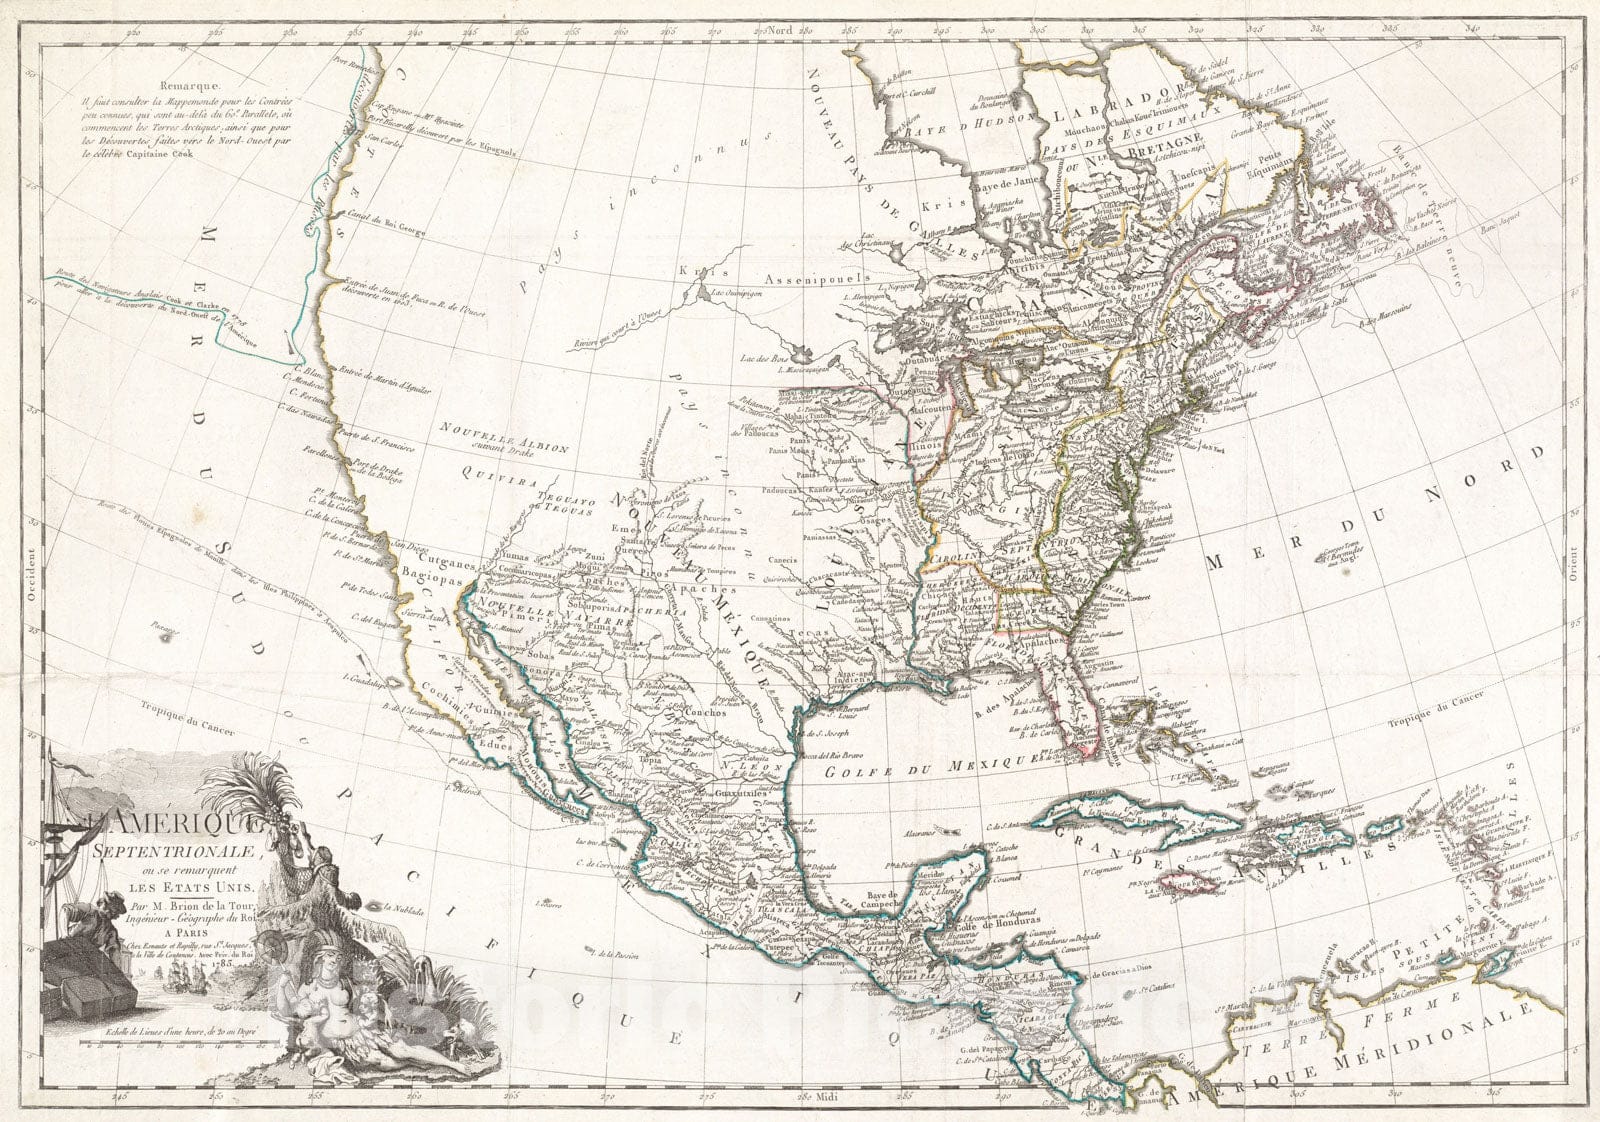 Historical Map, 1783 L'Amerique Septentrionale, ou se remarquent les Etats Unis, Vintage Wall Art